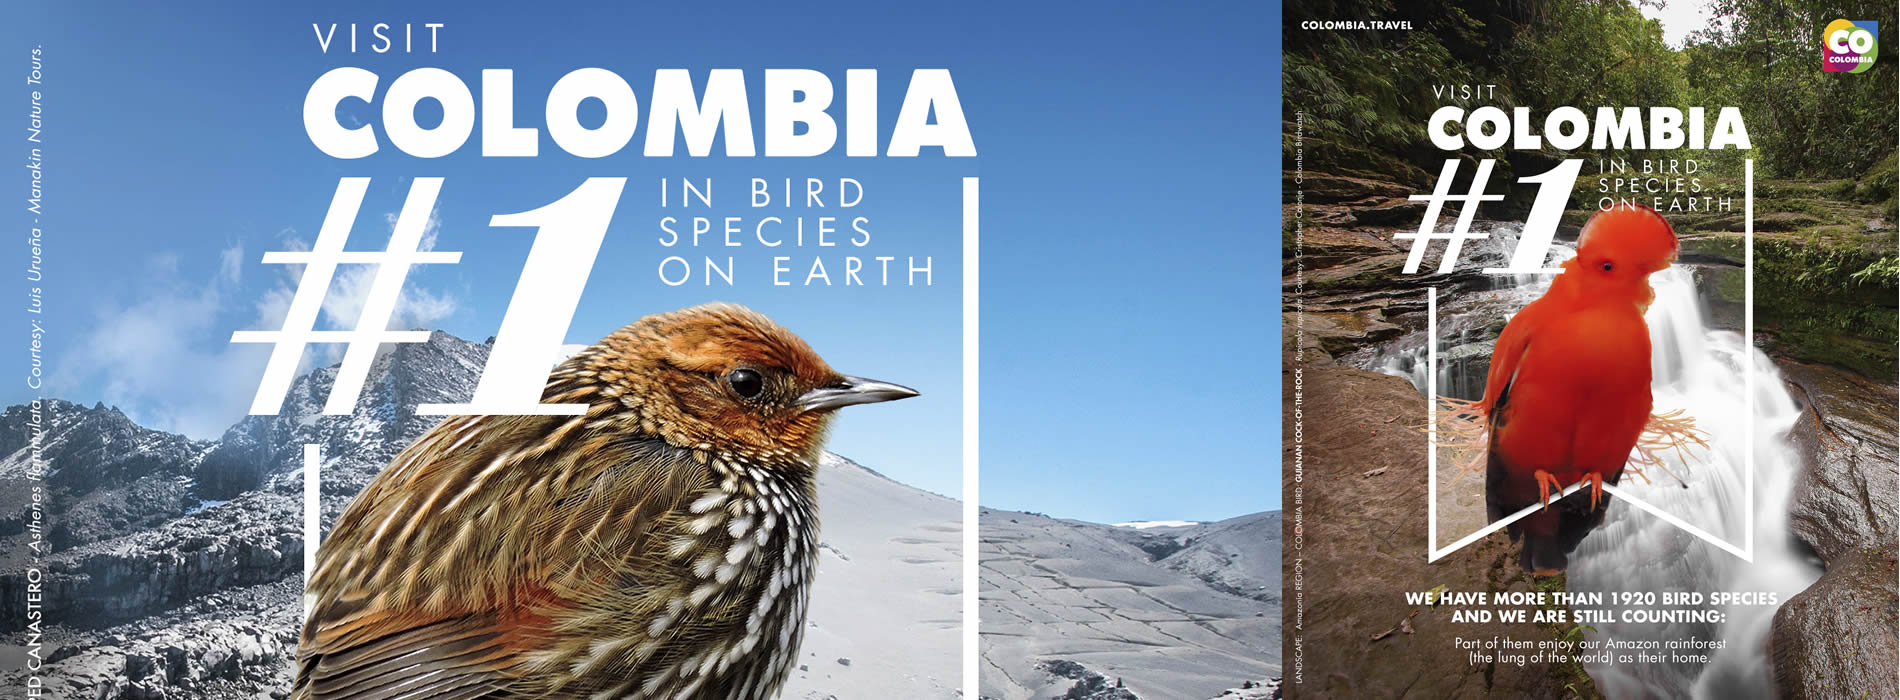 Avistamiento de aves en Colombia, protagonista en la feria de turismo más importante de Reino Unido